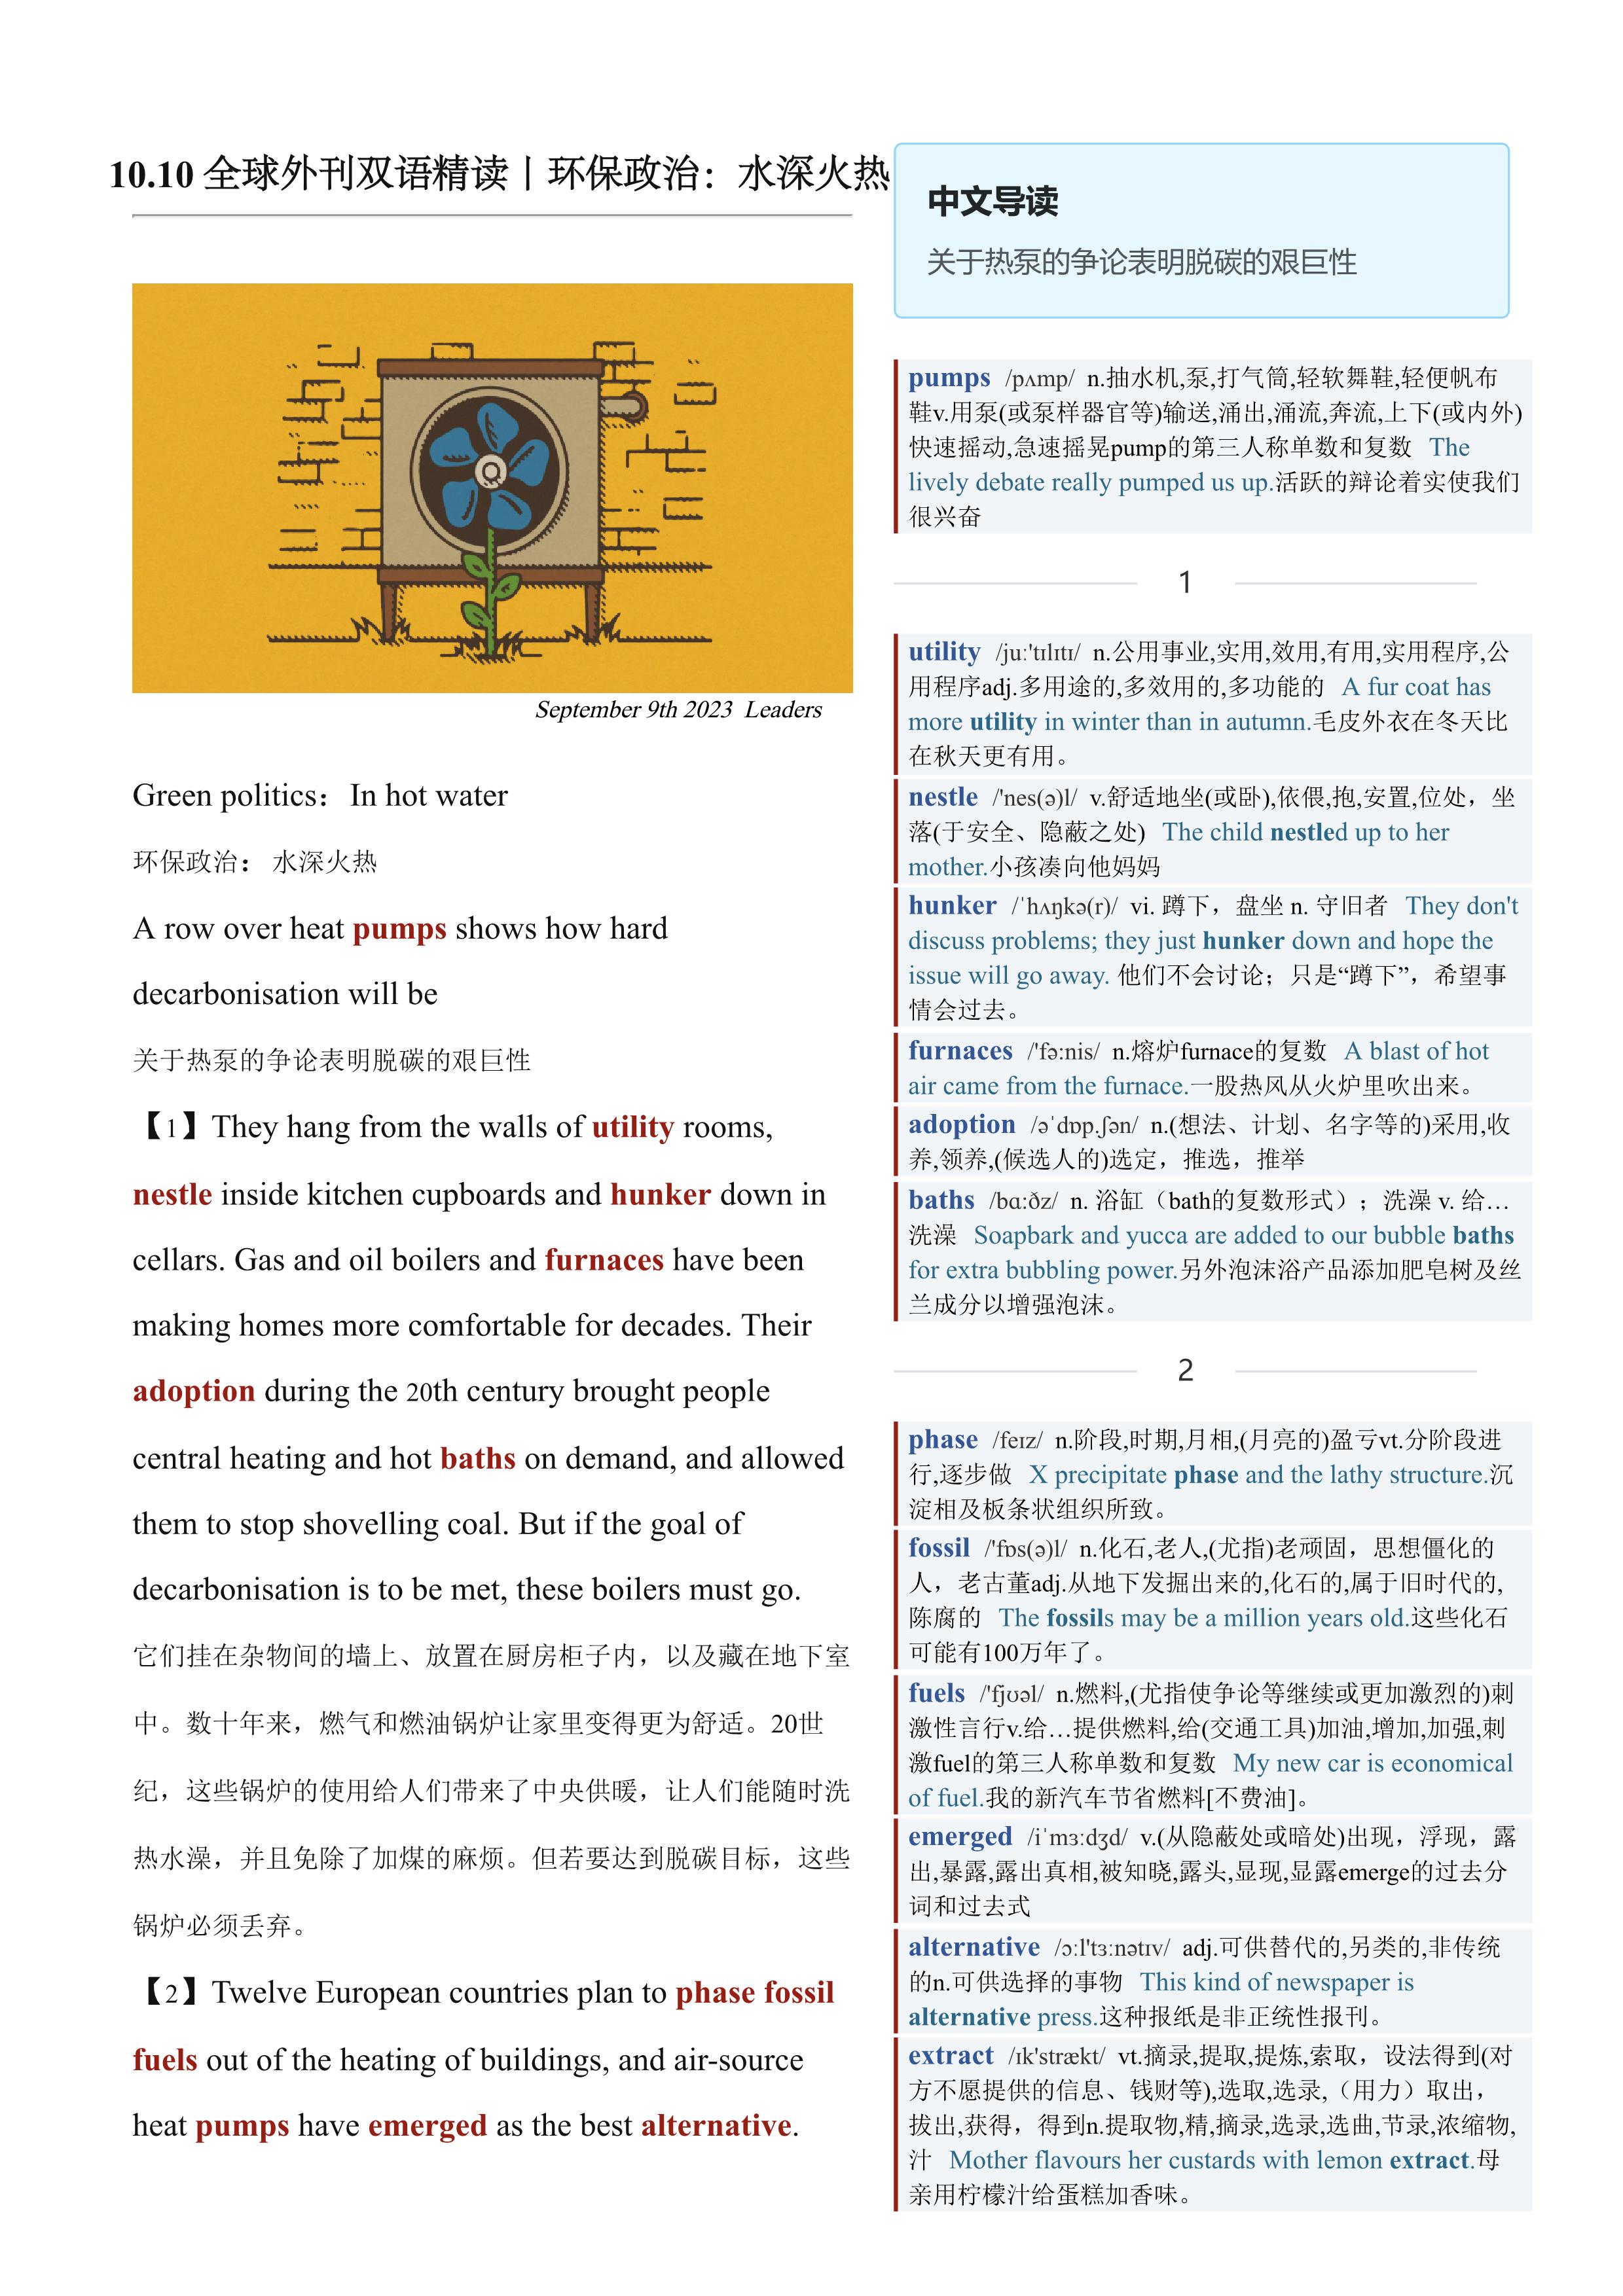 2023.10.10 经济学人双语精读丨环保政治：水深火热 (.PDF/DOC/MP3)